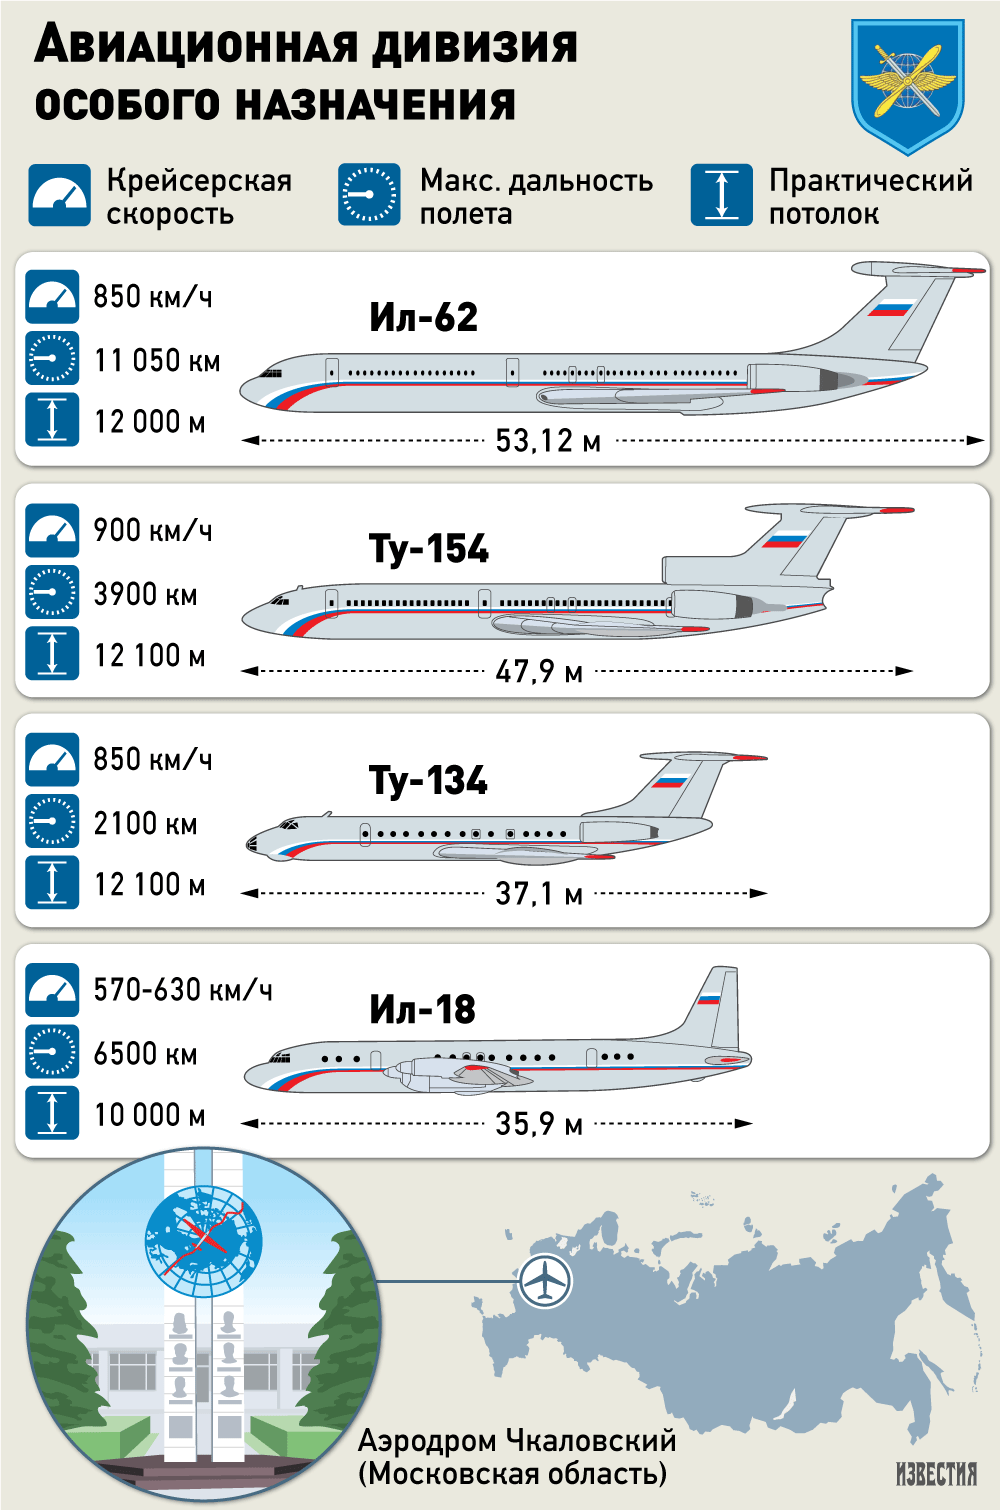 самолетный полк количество самолетов